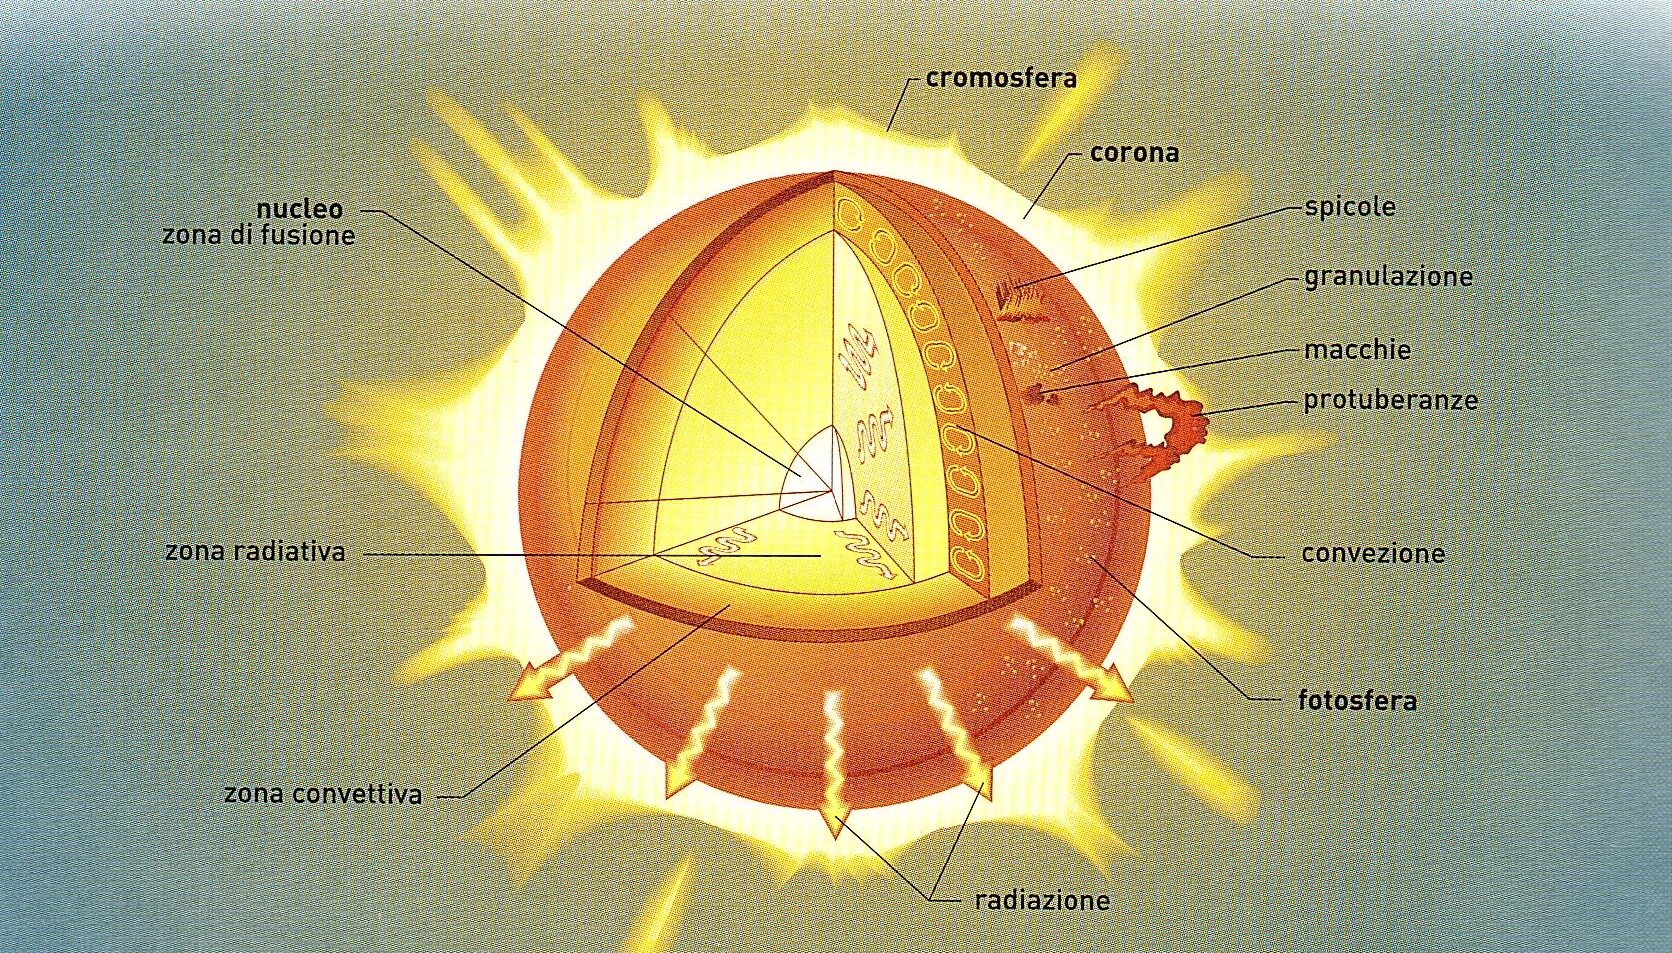 Внутреннее строение солнца схема. Внутреннее строение солнца рисунок. Строение солнца внутреннее и внешнее. Солнце в разрезе. Верхний слой солнечной атмосферы